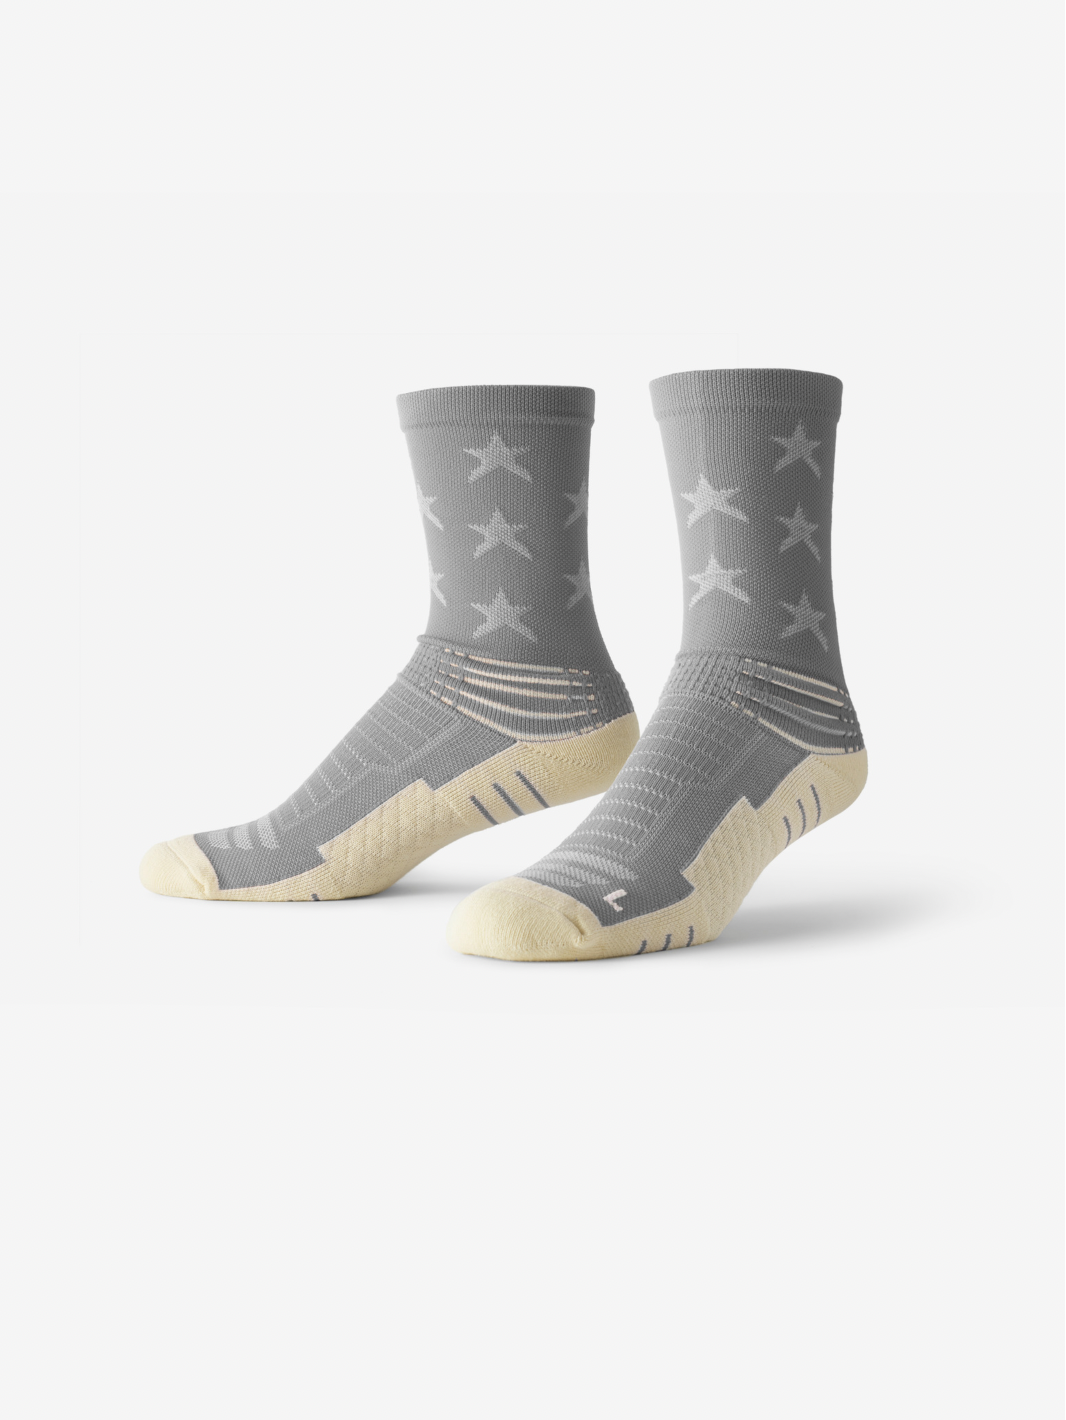 Athletic Mid Calf Socks | Mid Calf Athletic Socks | Best Athletic Socks For Men | SMRTFT